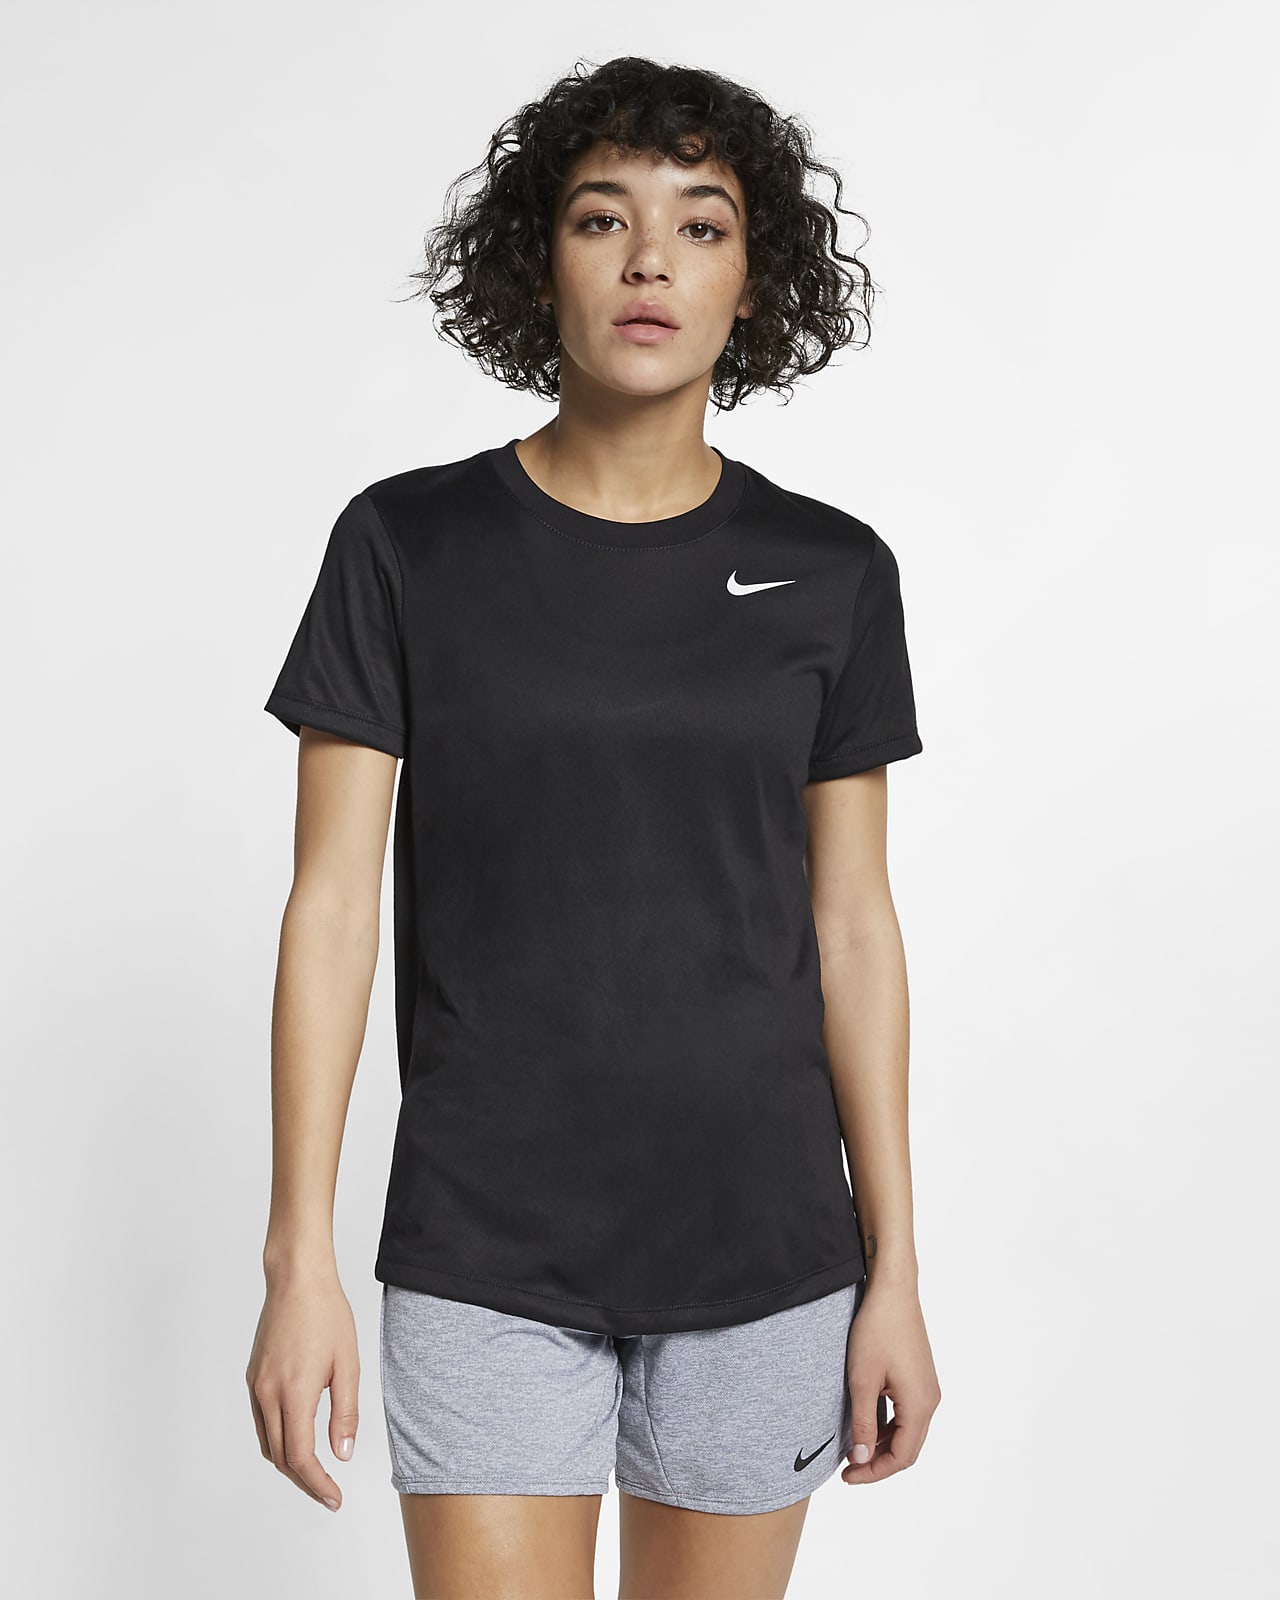 เสื้อยืดเทรนนิ่งผู้หญิง Nike Legend